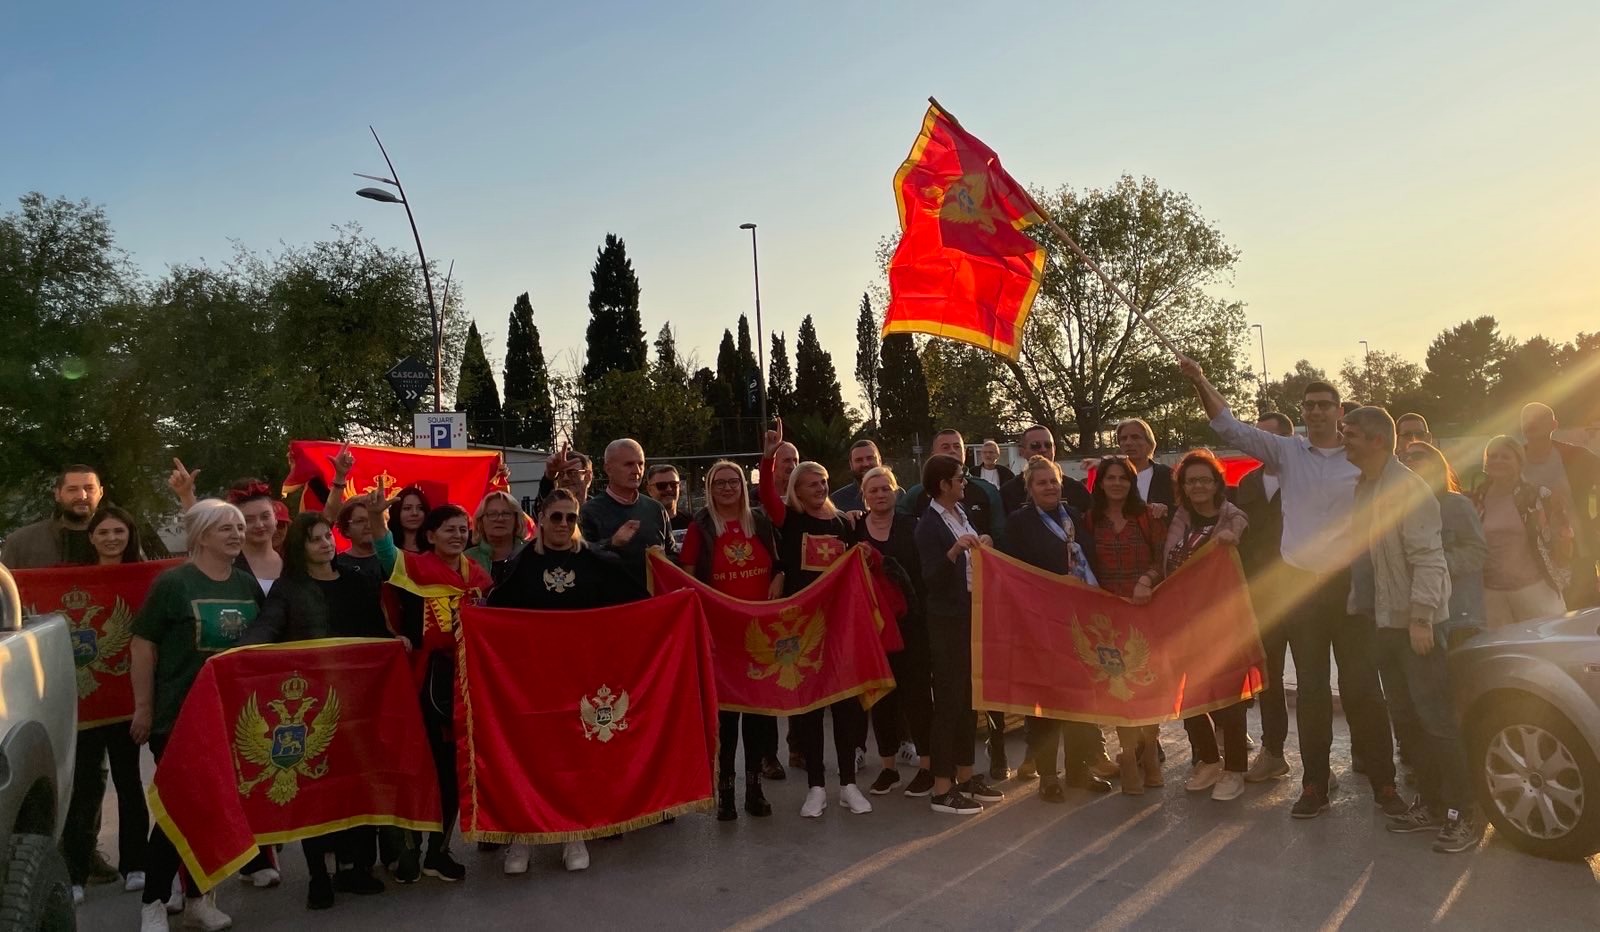 ANALIZA: Bez fer izbora građanska Crna Gora nema šansi